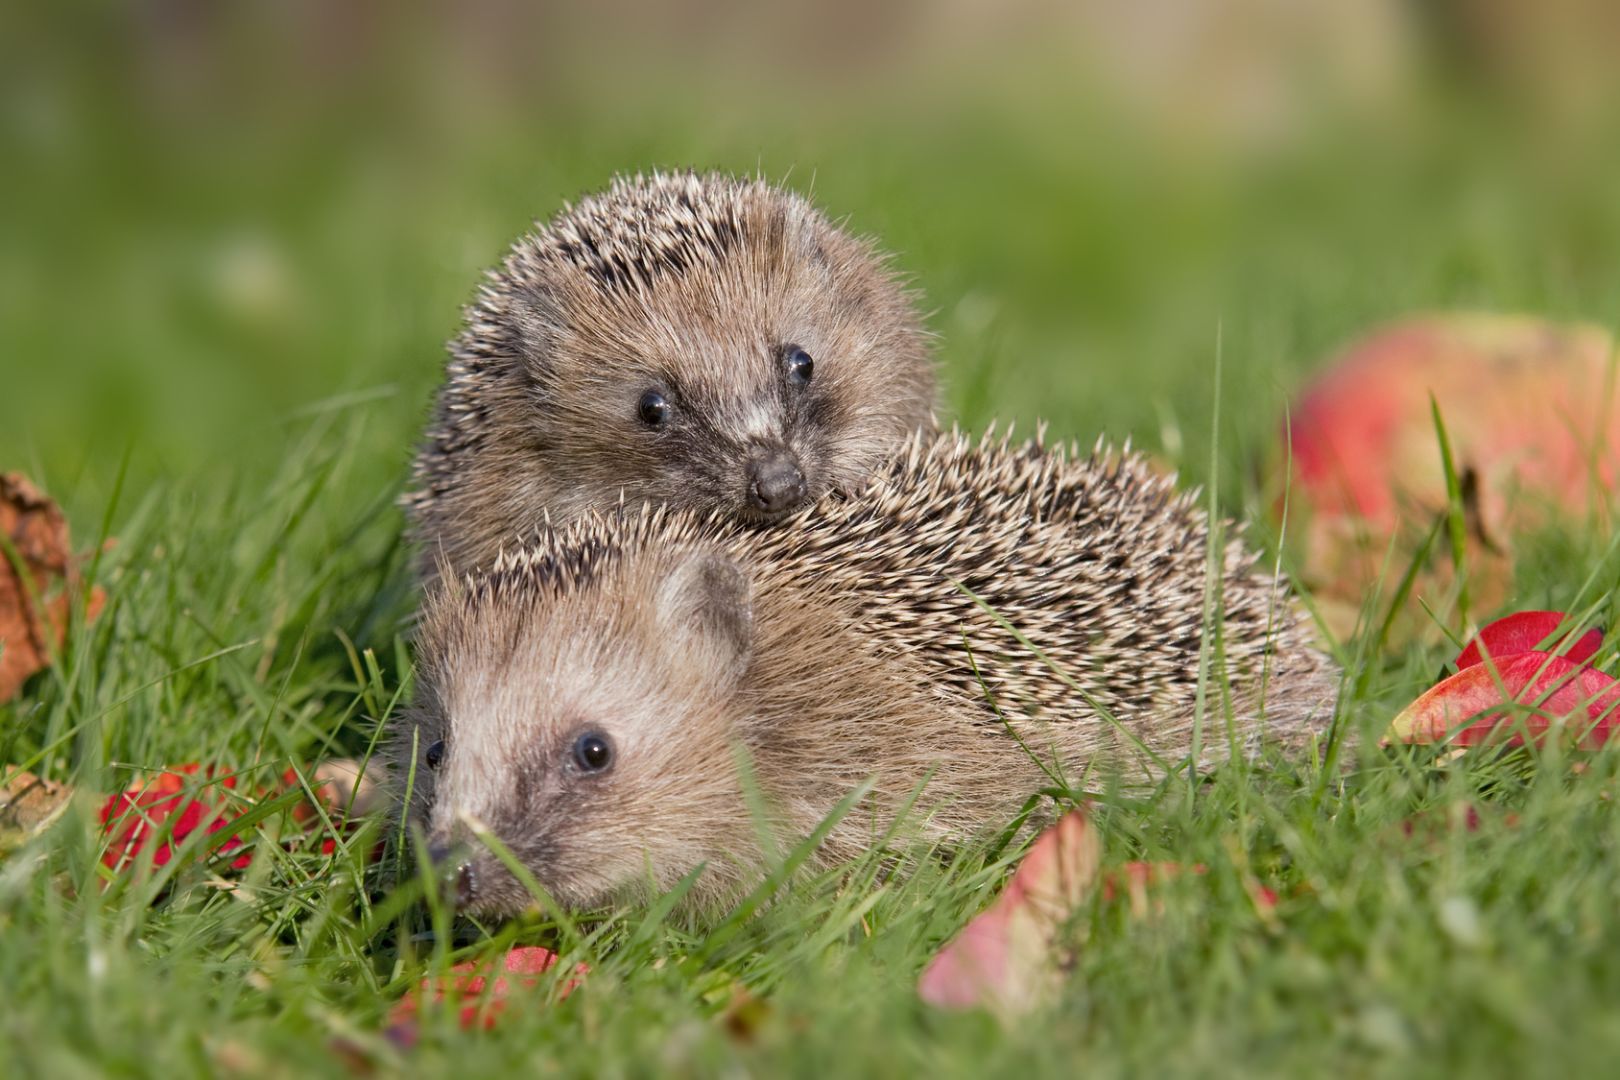 Pair of hedgehogs